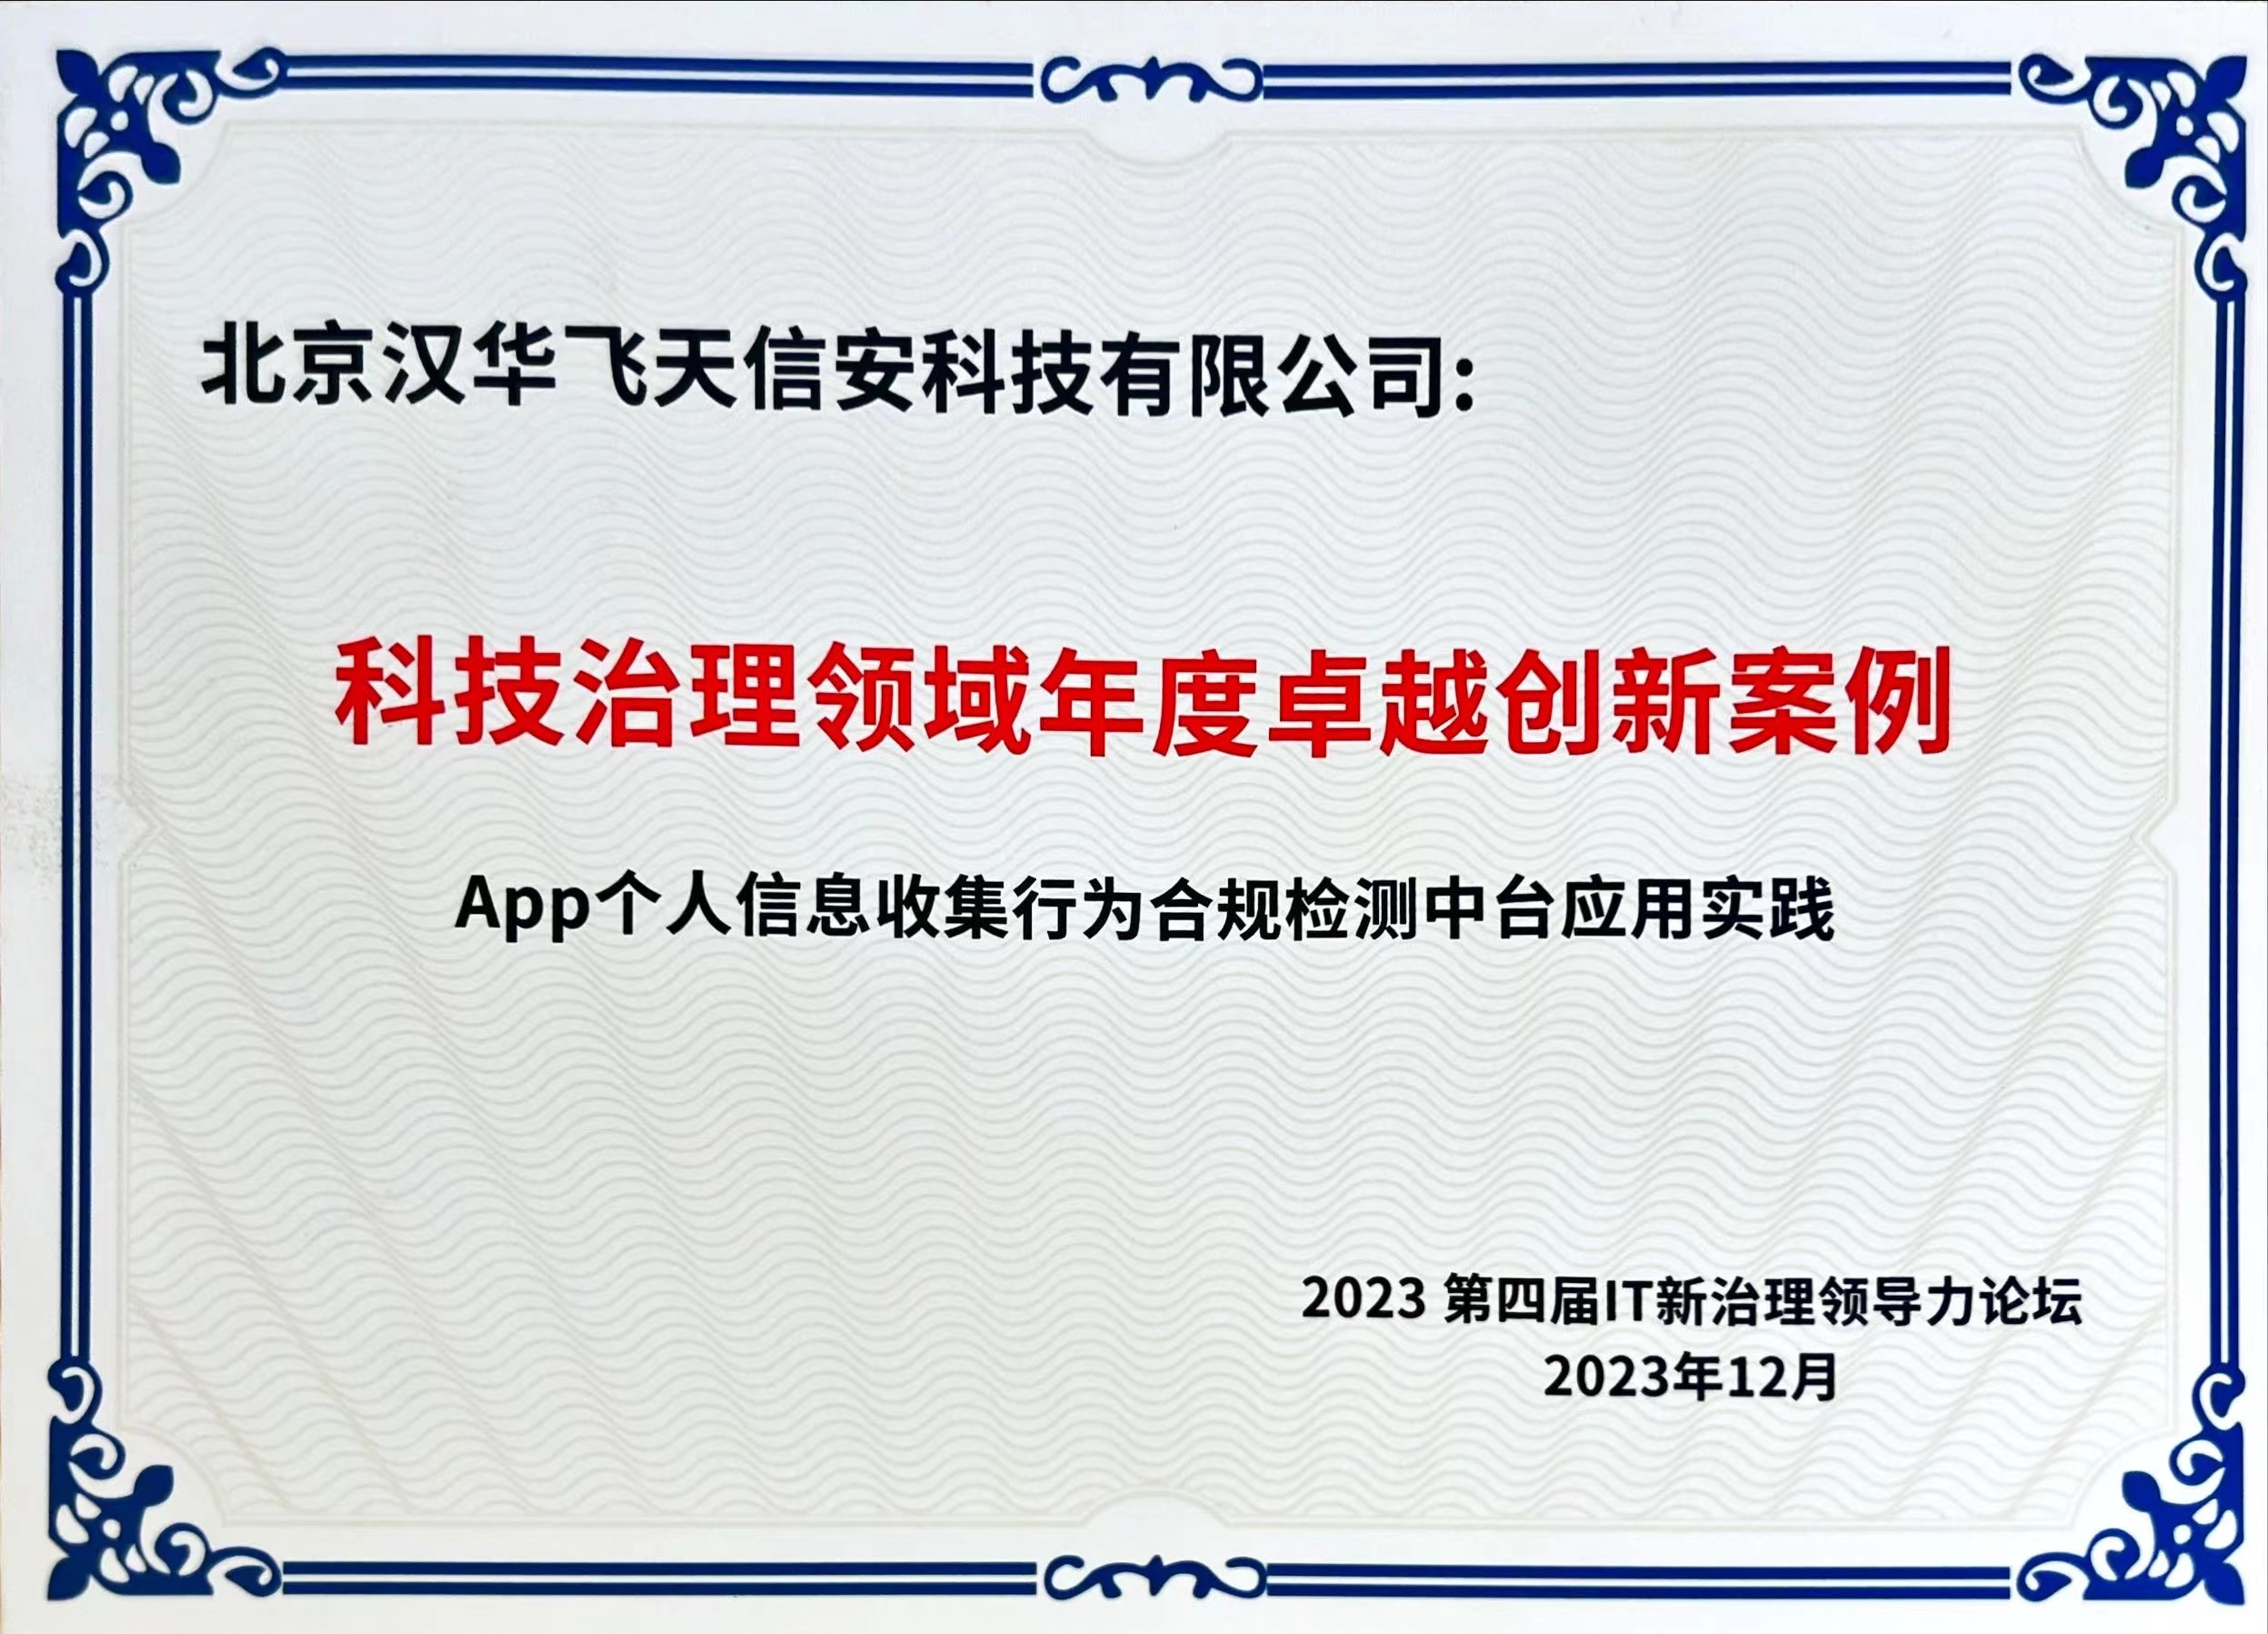 喜讯频传 | 汉华信安荣获“科技治理领域年度卓越创新案例”称号